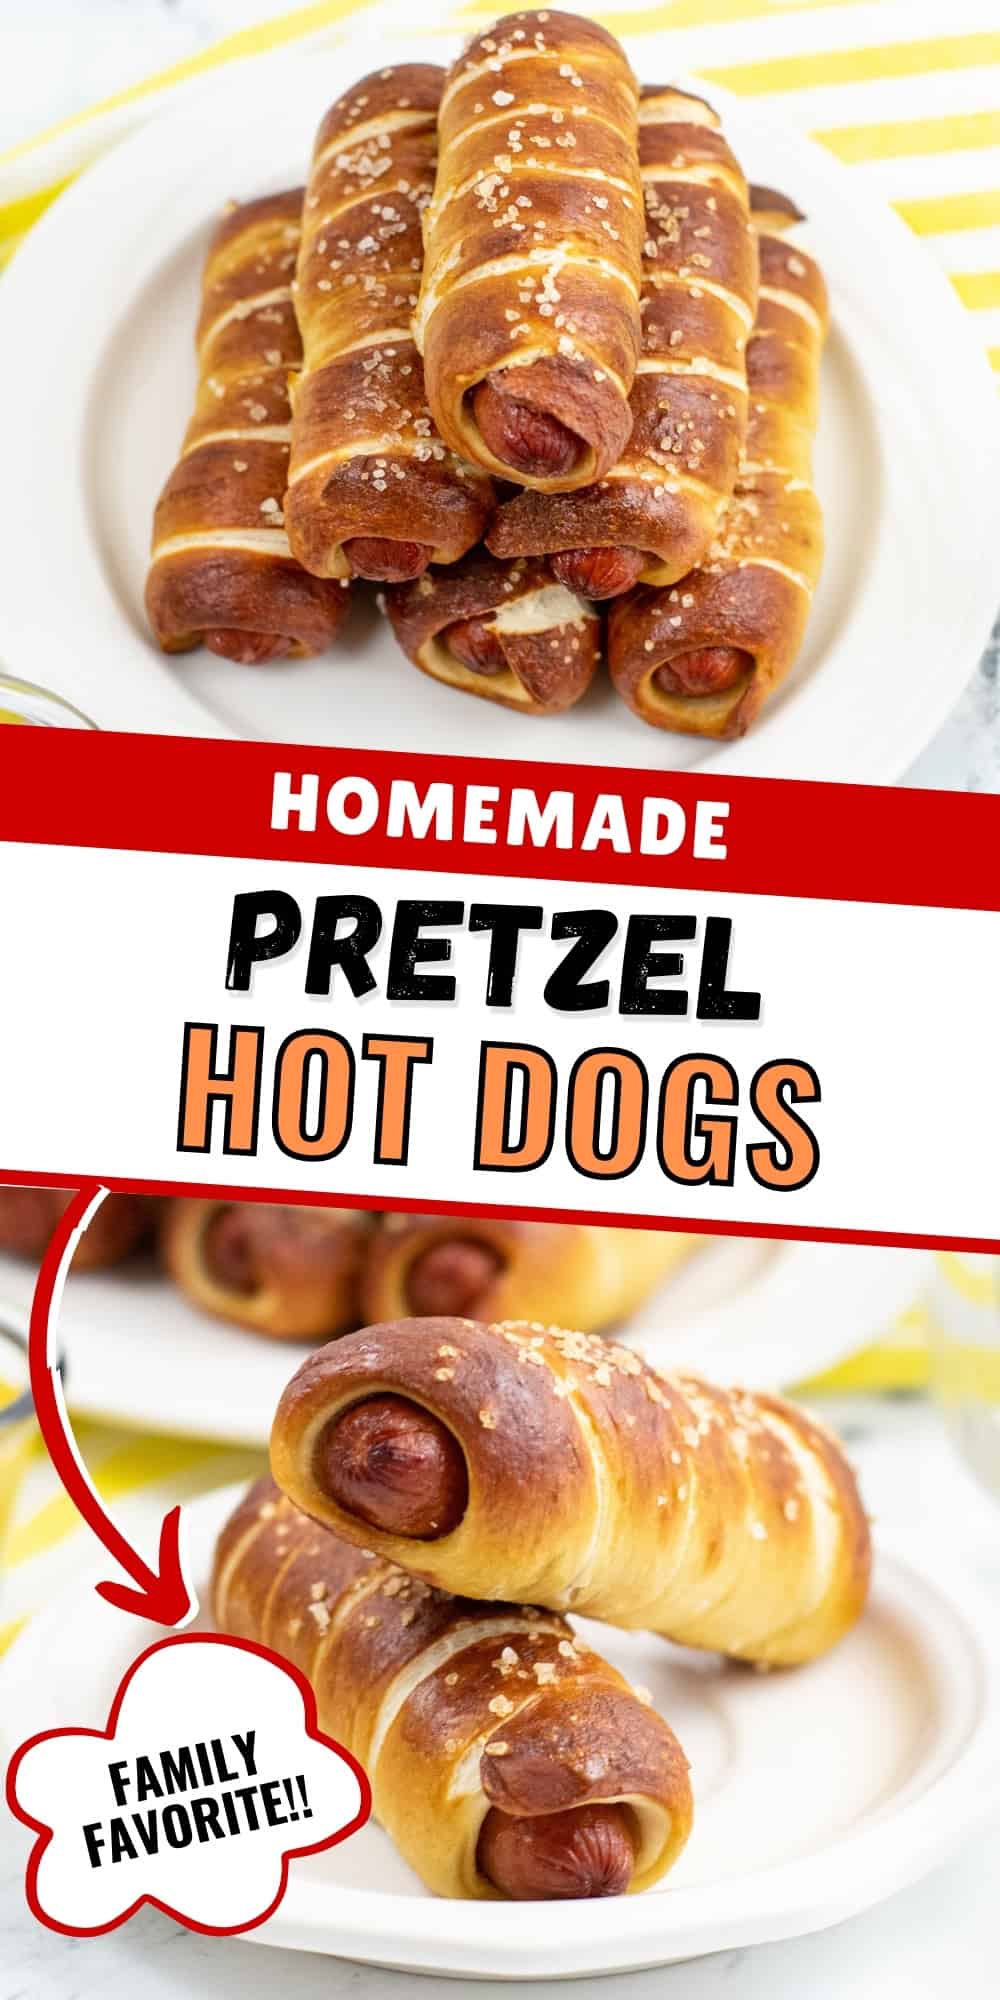 Homemade Pretzel Hot Dogs - Family Favorite! Pin